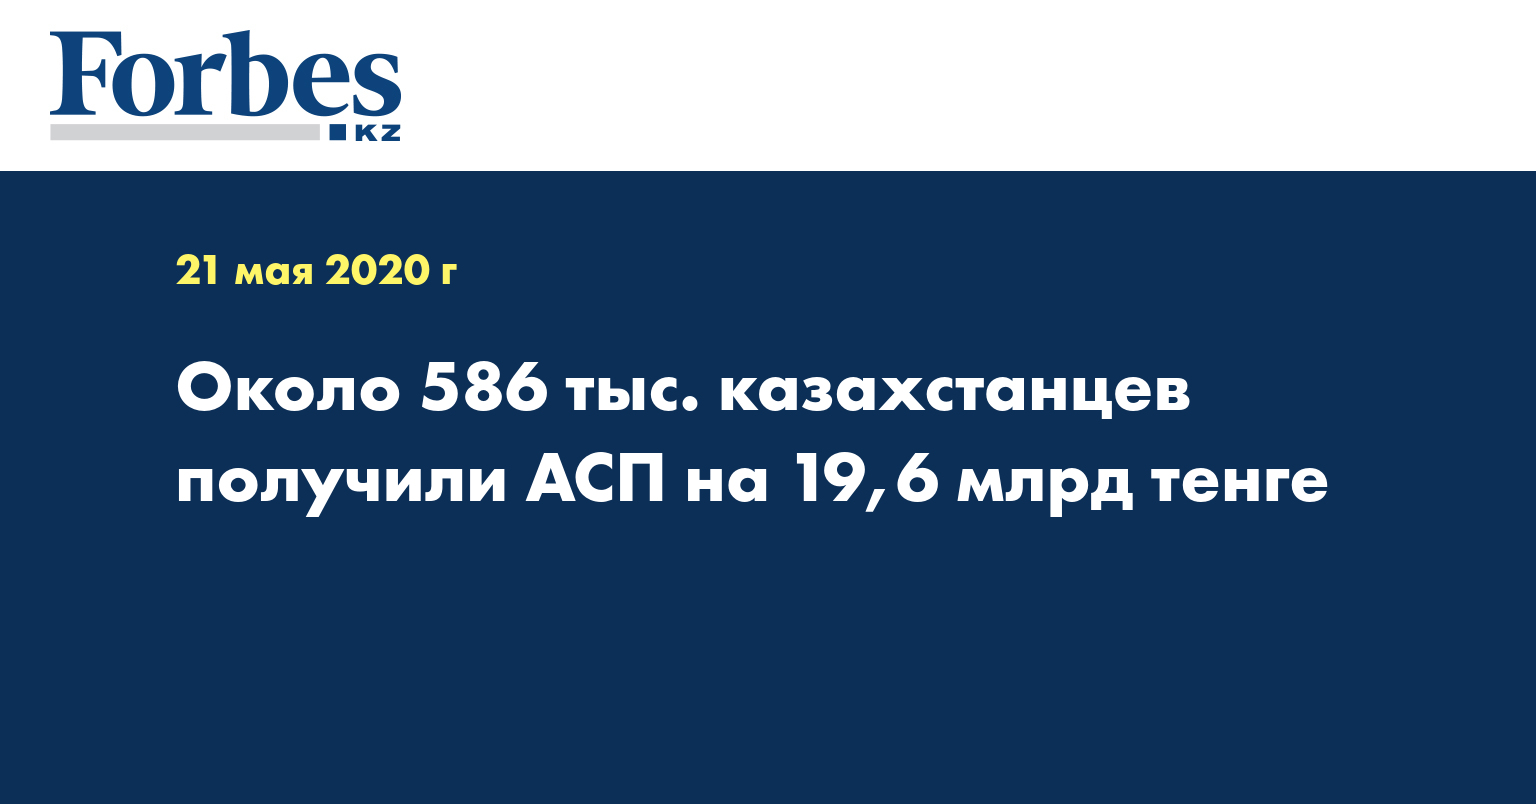 Около 586 тыс. казахстанцев получили АСП на 19,6 млрд тенге